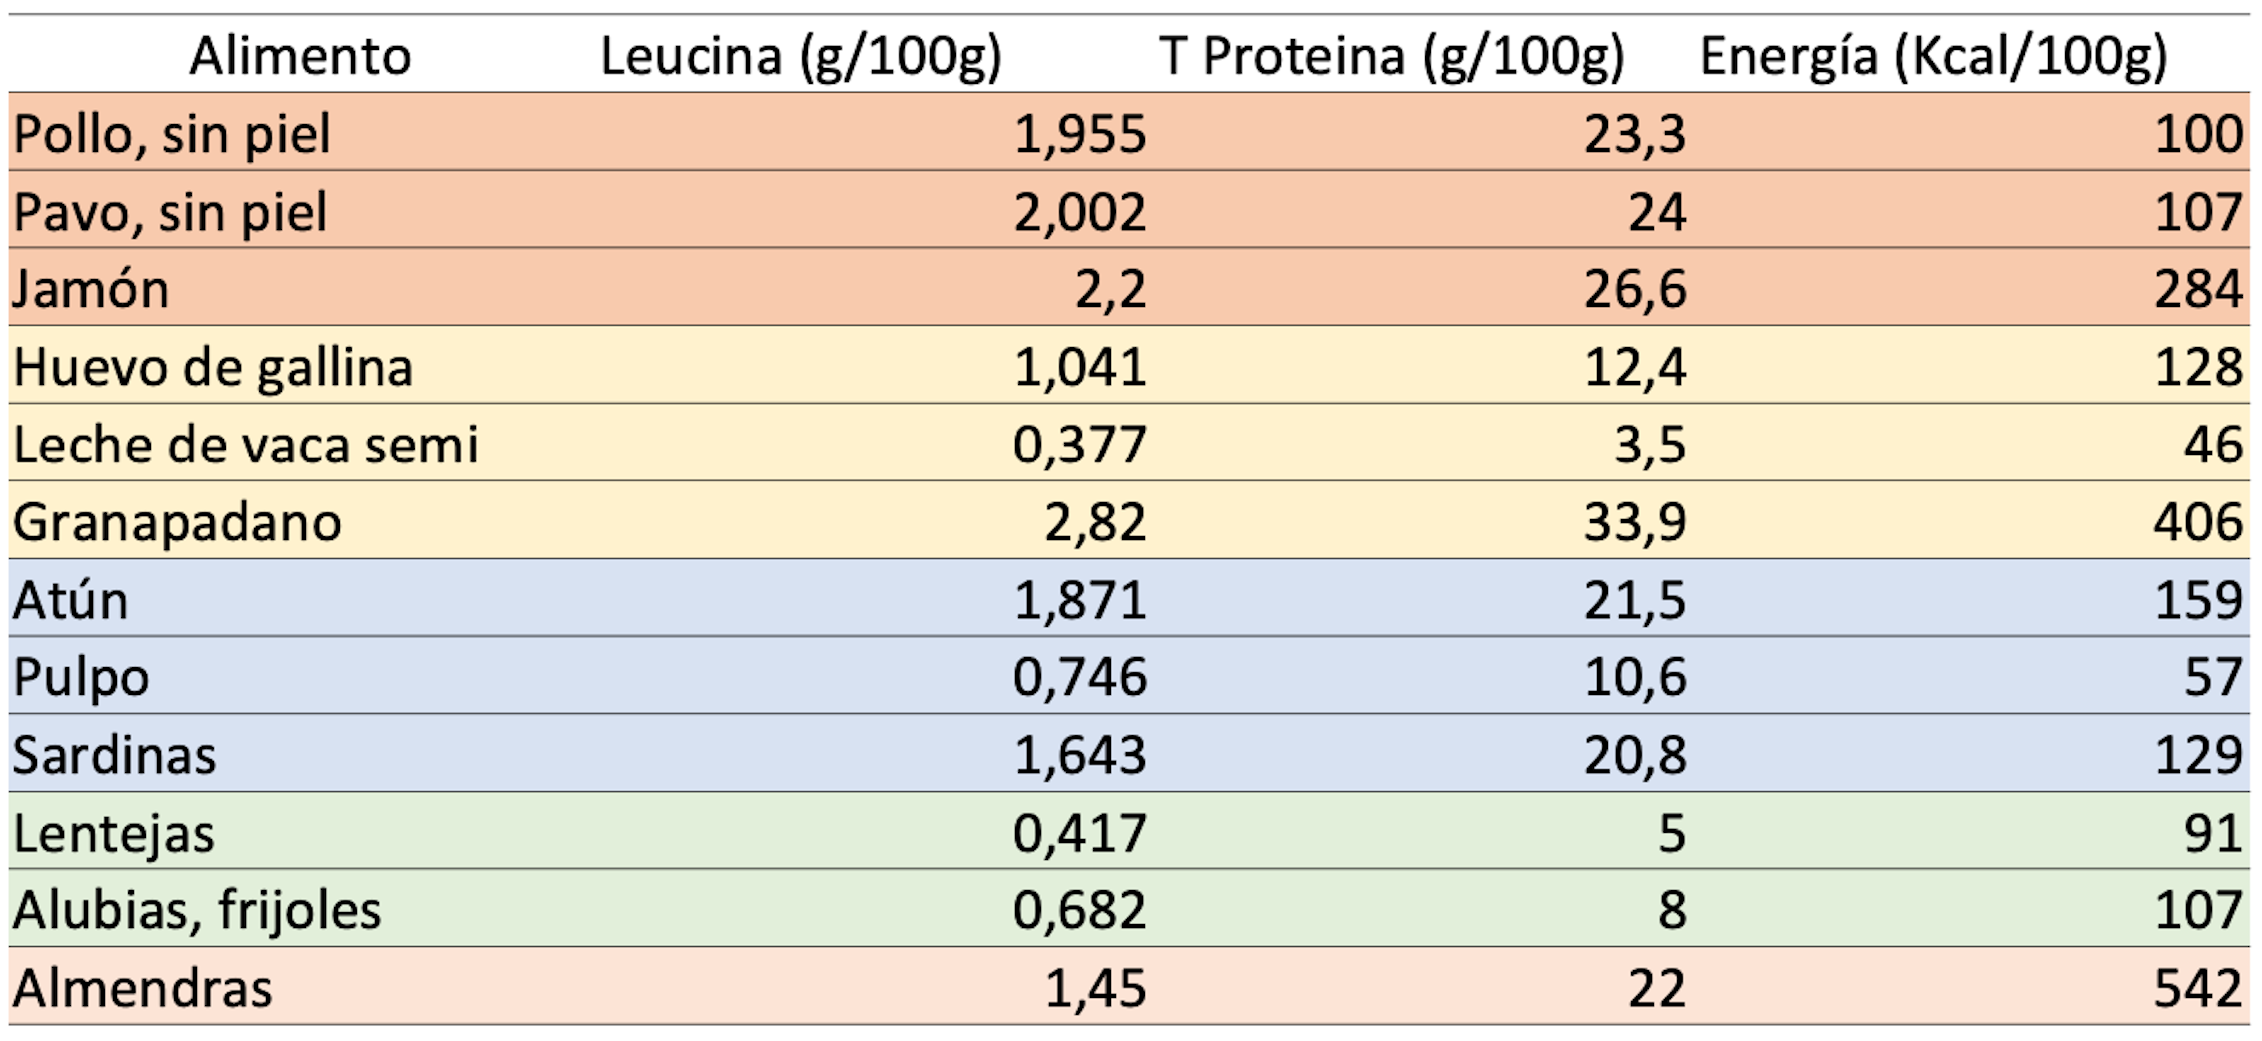 Que porcentaje de proteina debo consumi para estar en cetosis